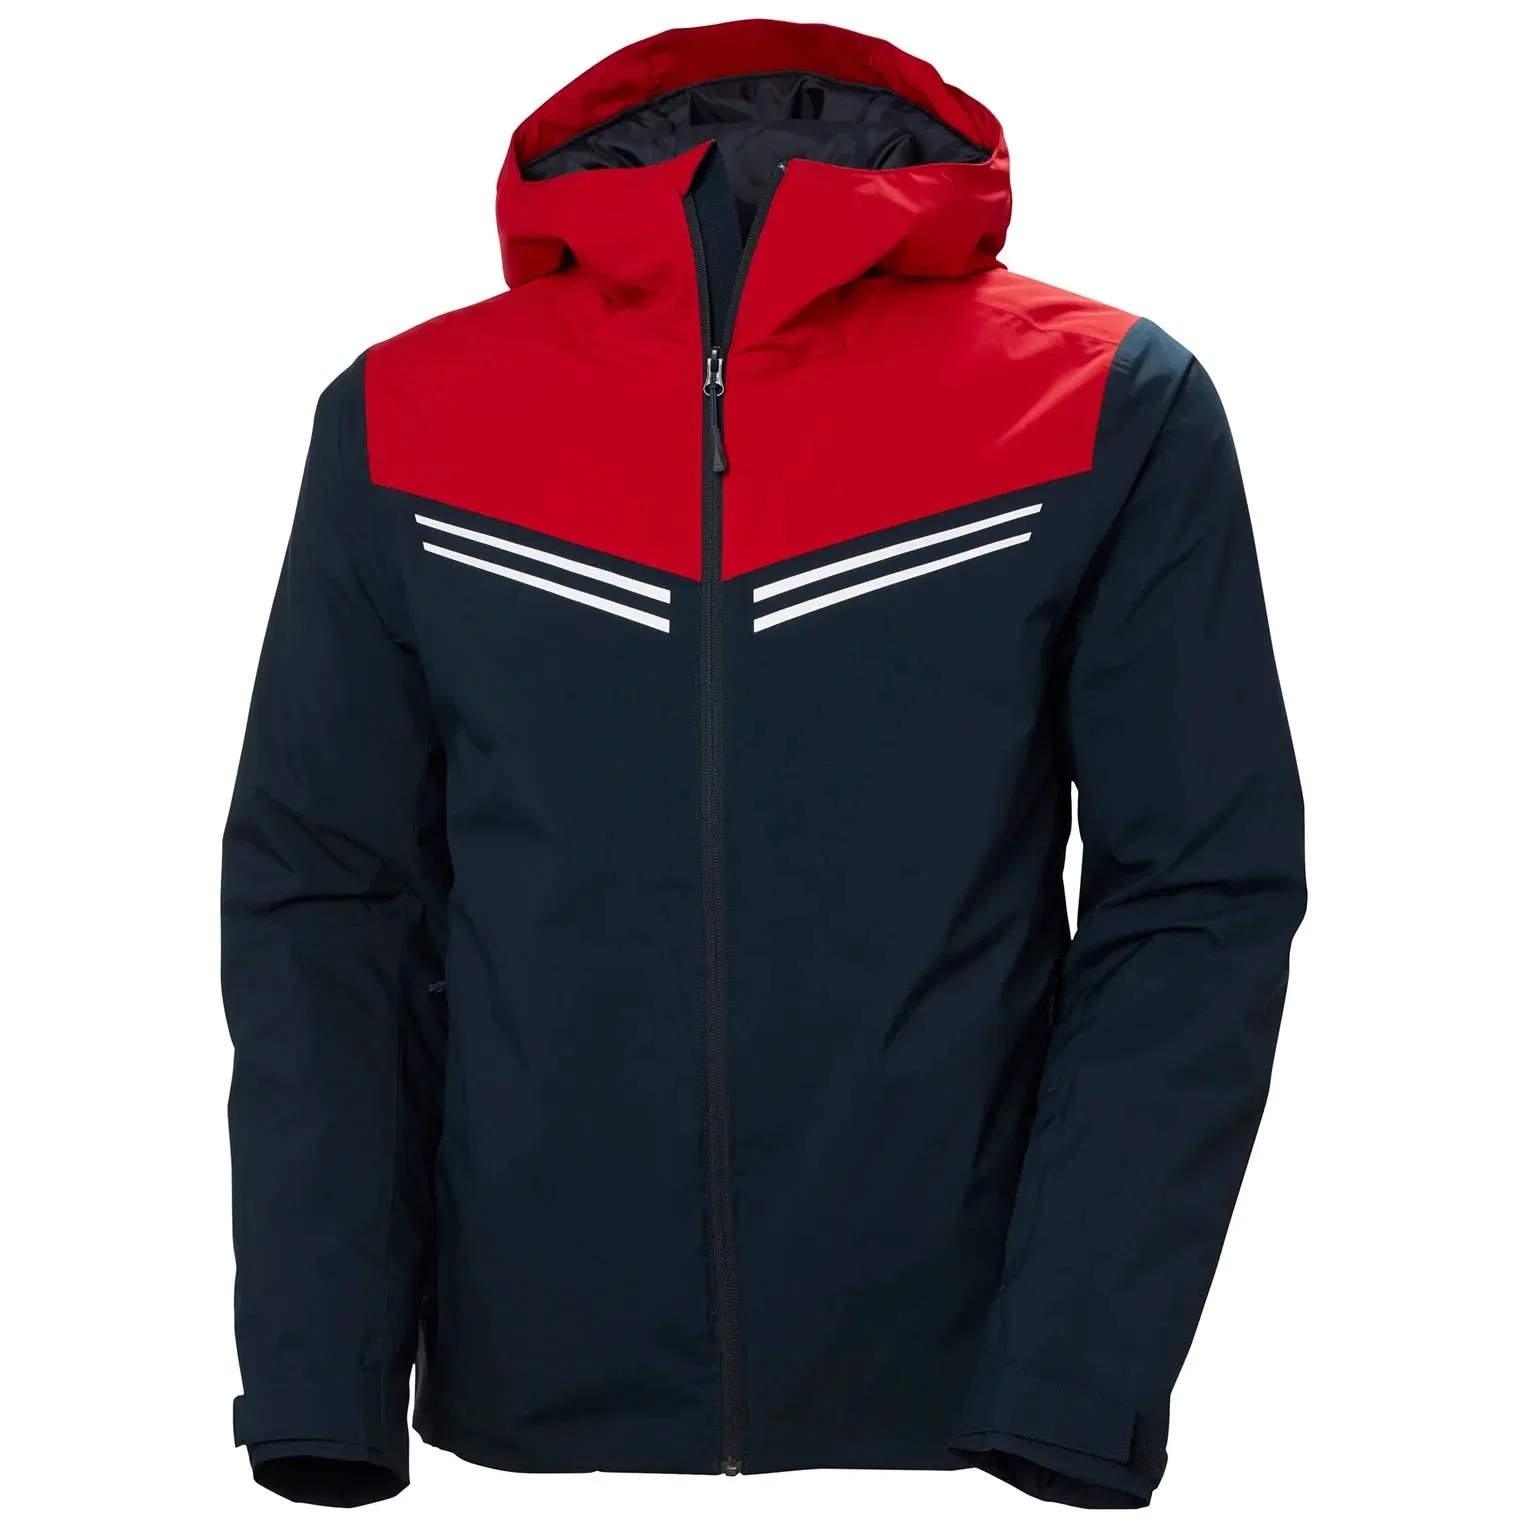 Novo casaco impermeável para desporto impermeável de moda térmica para homem novo Wear Ski Jacket